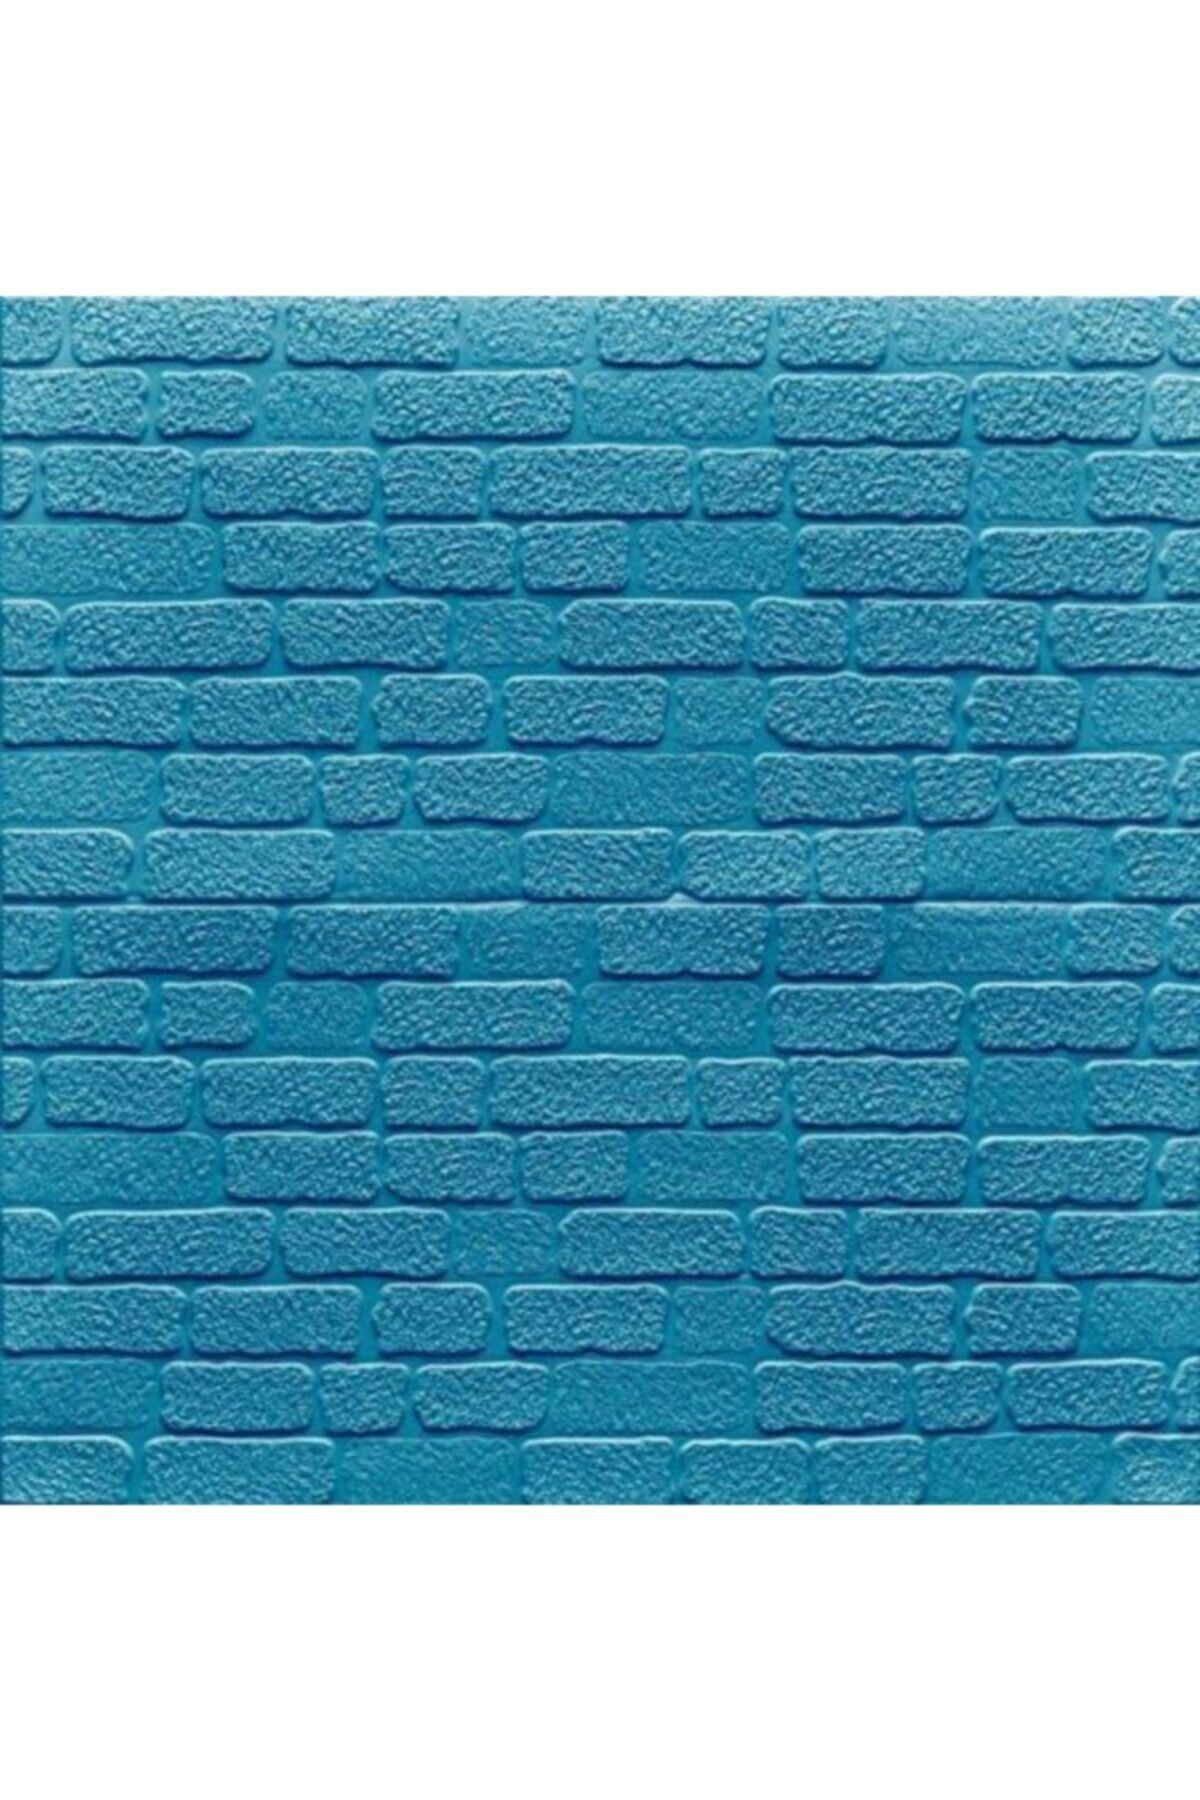 Renkli Duvarlar Nw33 Mini Mavi Taş Arkası Yapışkanlı Esnek Silinebilir Duvar Paneli